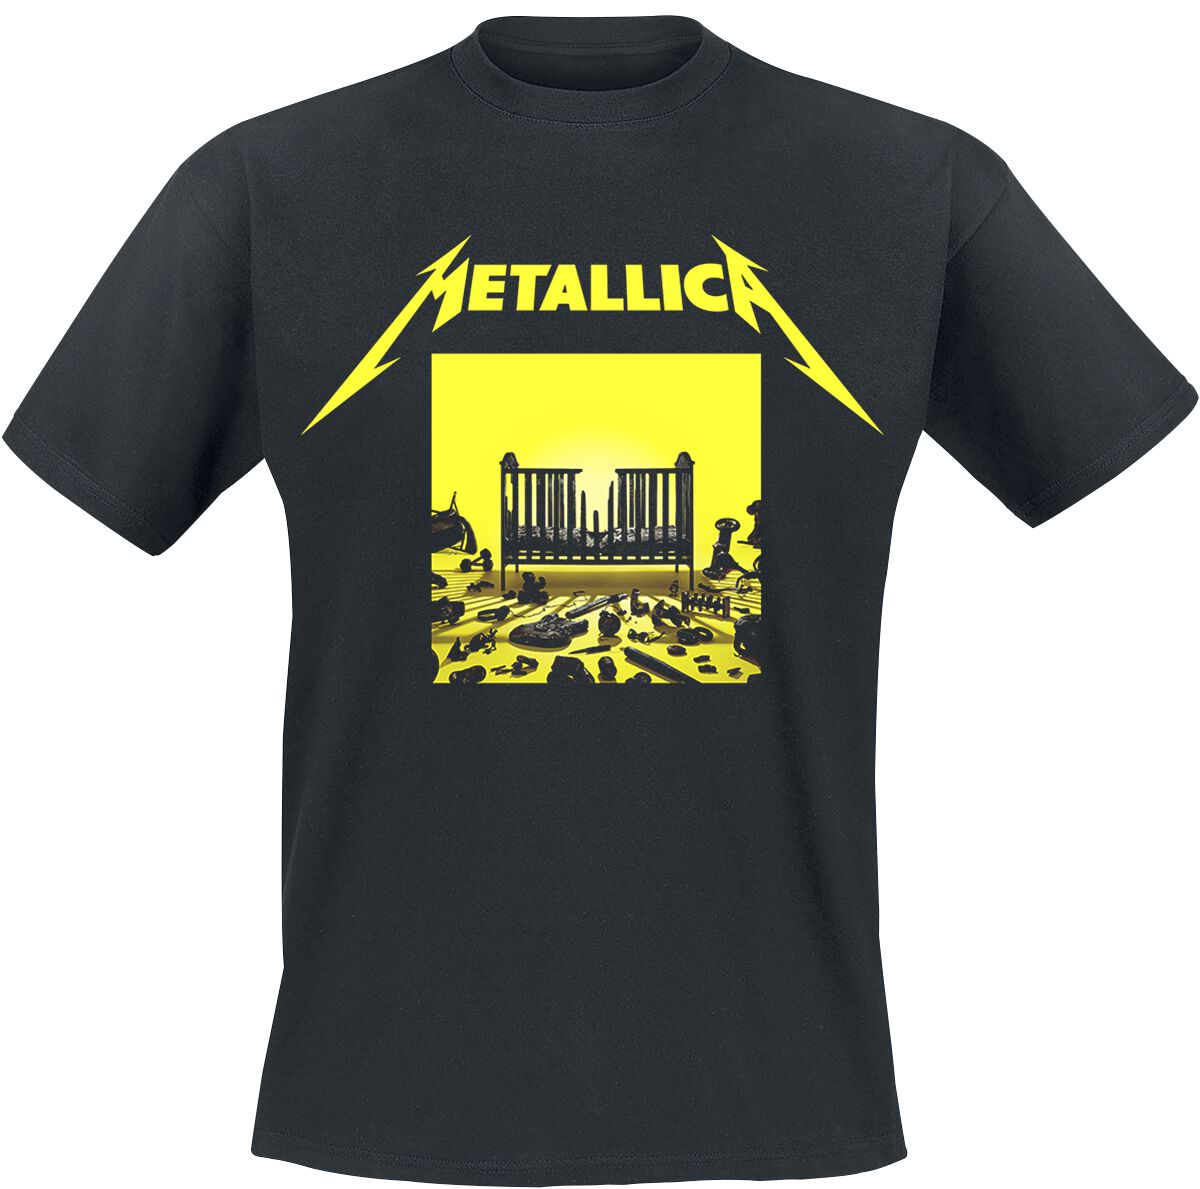 Metallica T-Shirt - M72 Squared Cover - S bis 5XL - für Männer - Größe 5XL - schwarz  - Lizenziertes Merchandise!